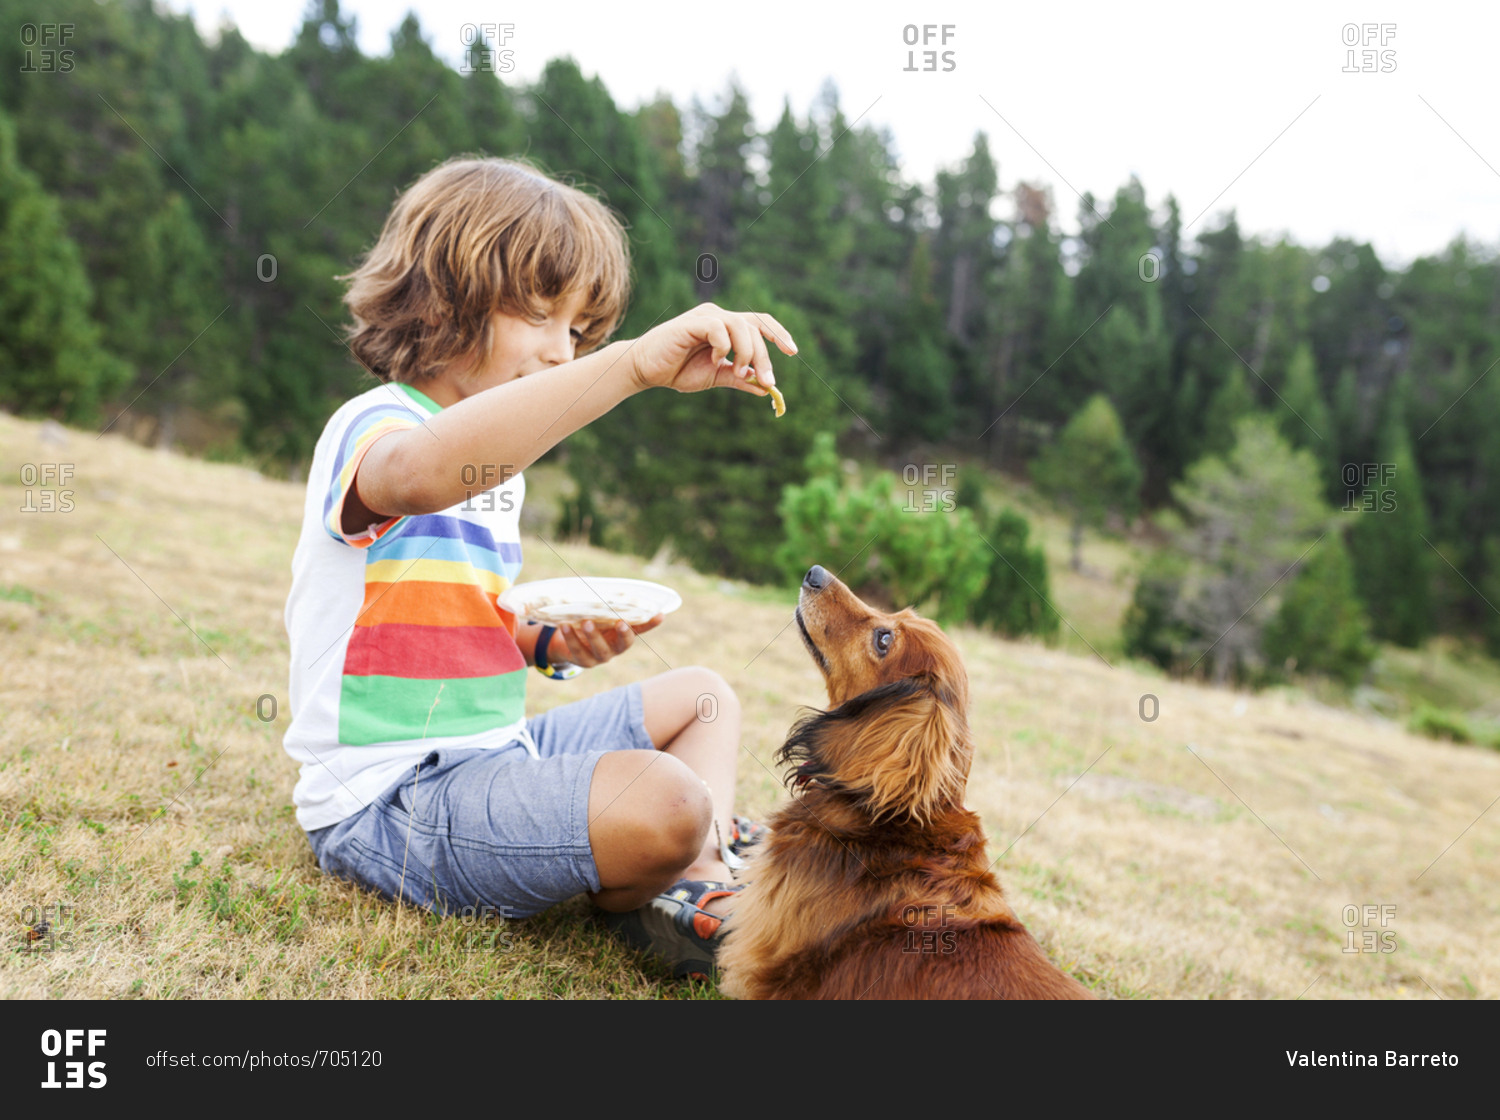 Young boy feeding dog snacks in a field